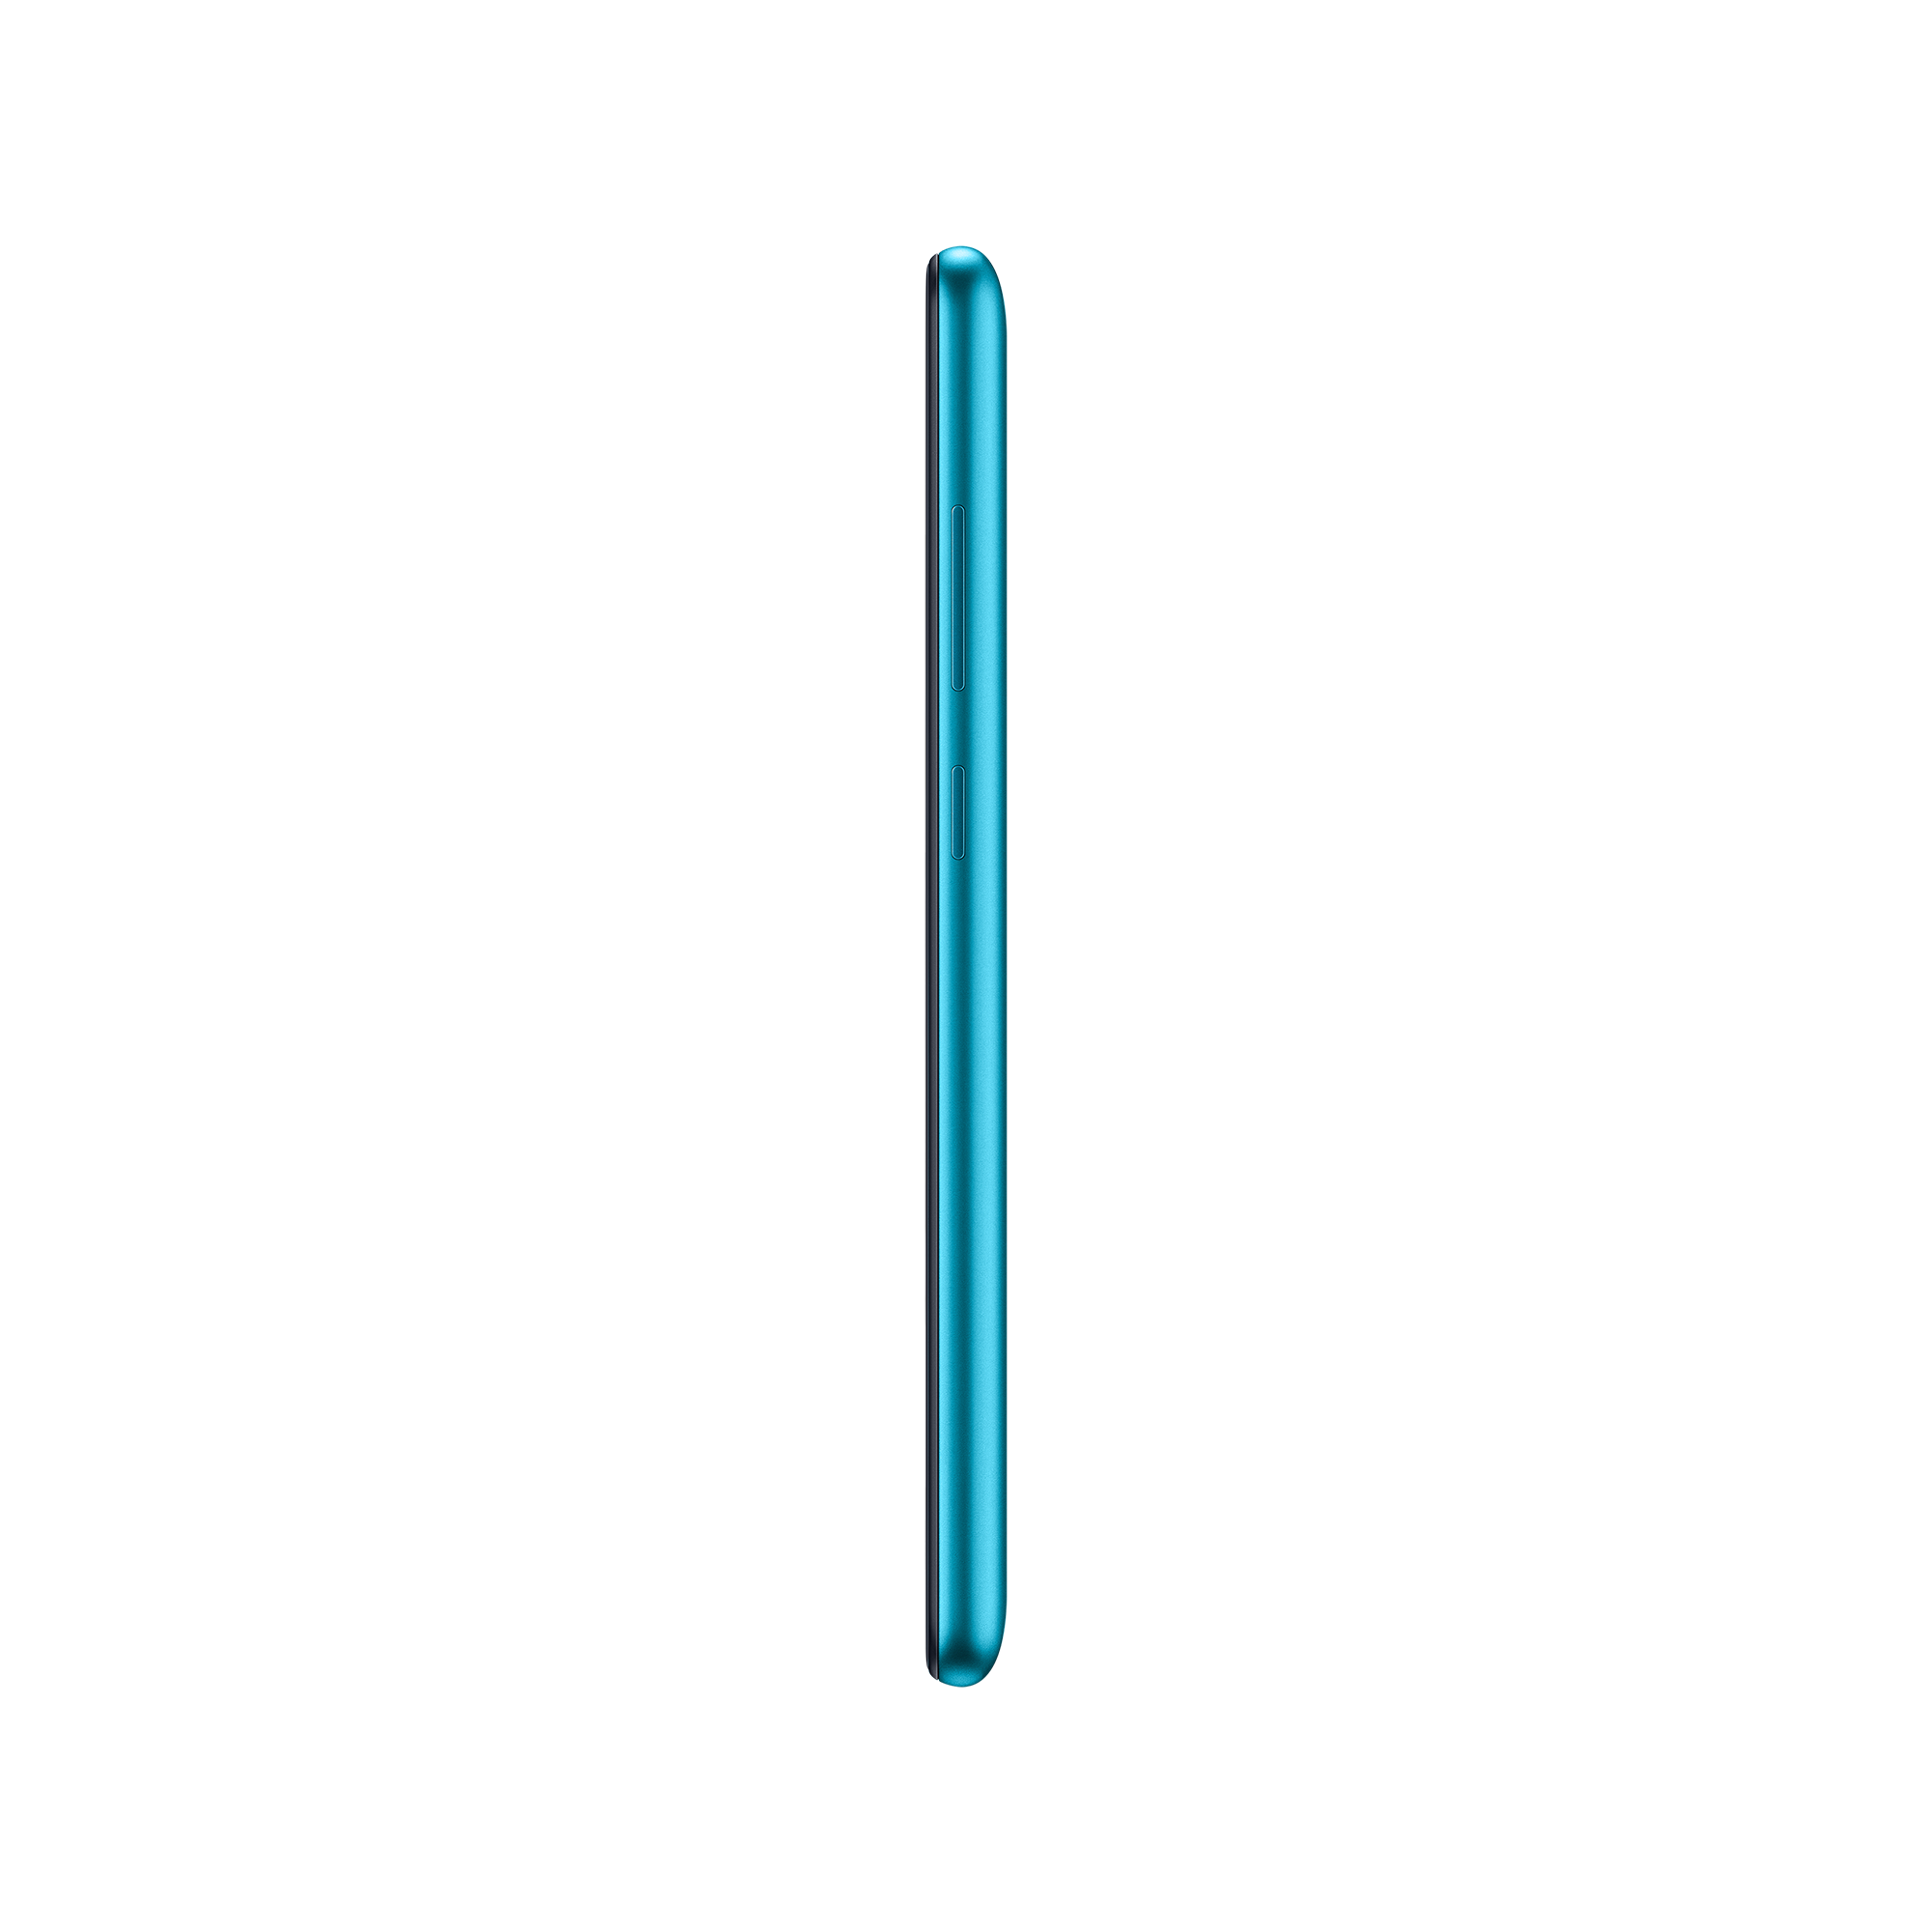 Samsung Galaxy M11 Blue Left Side